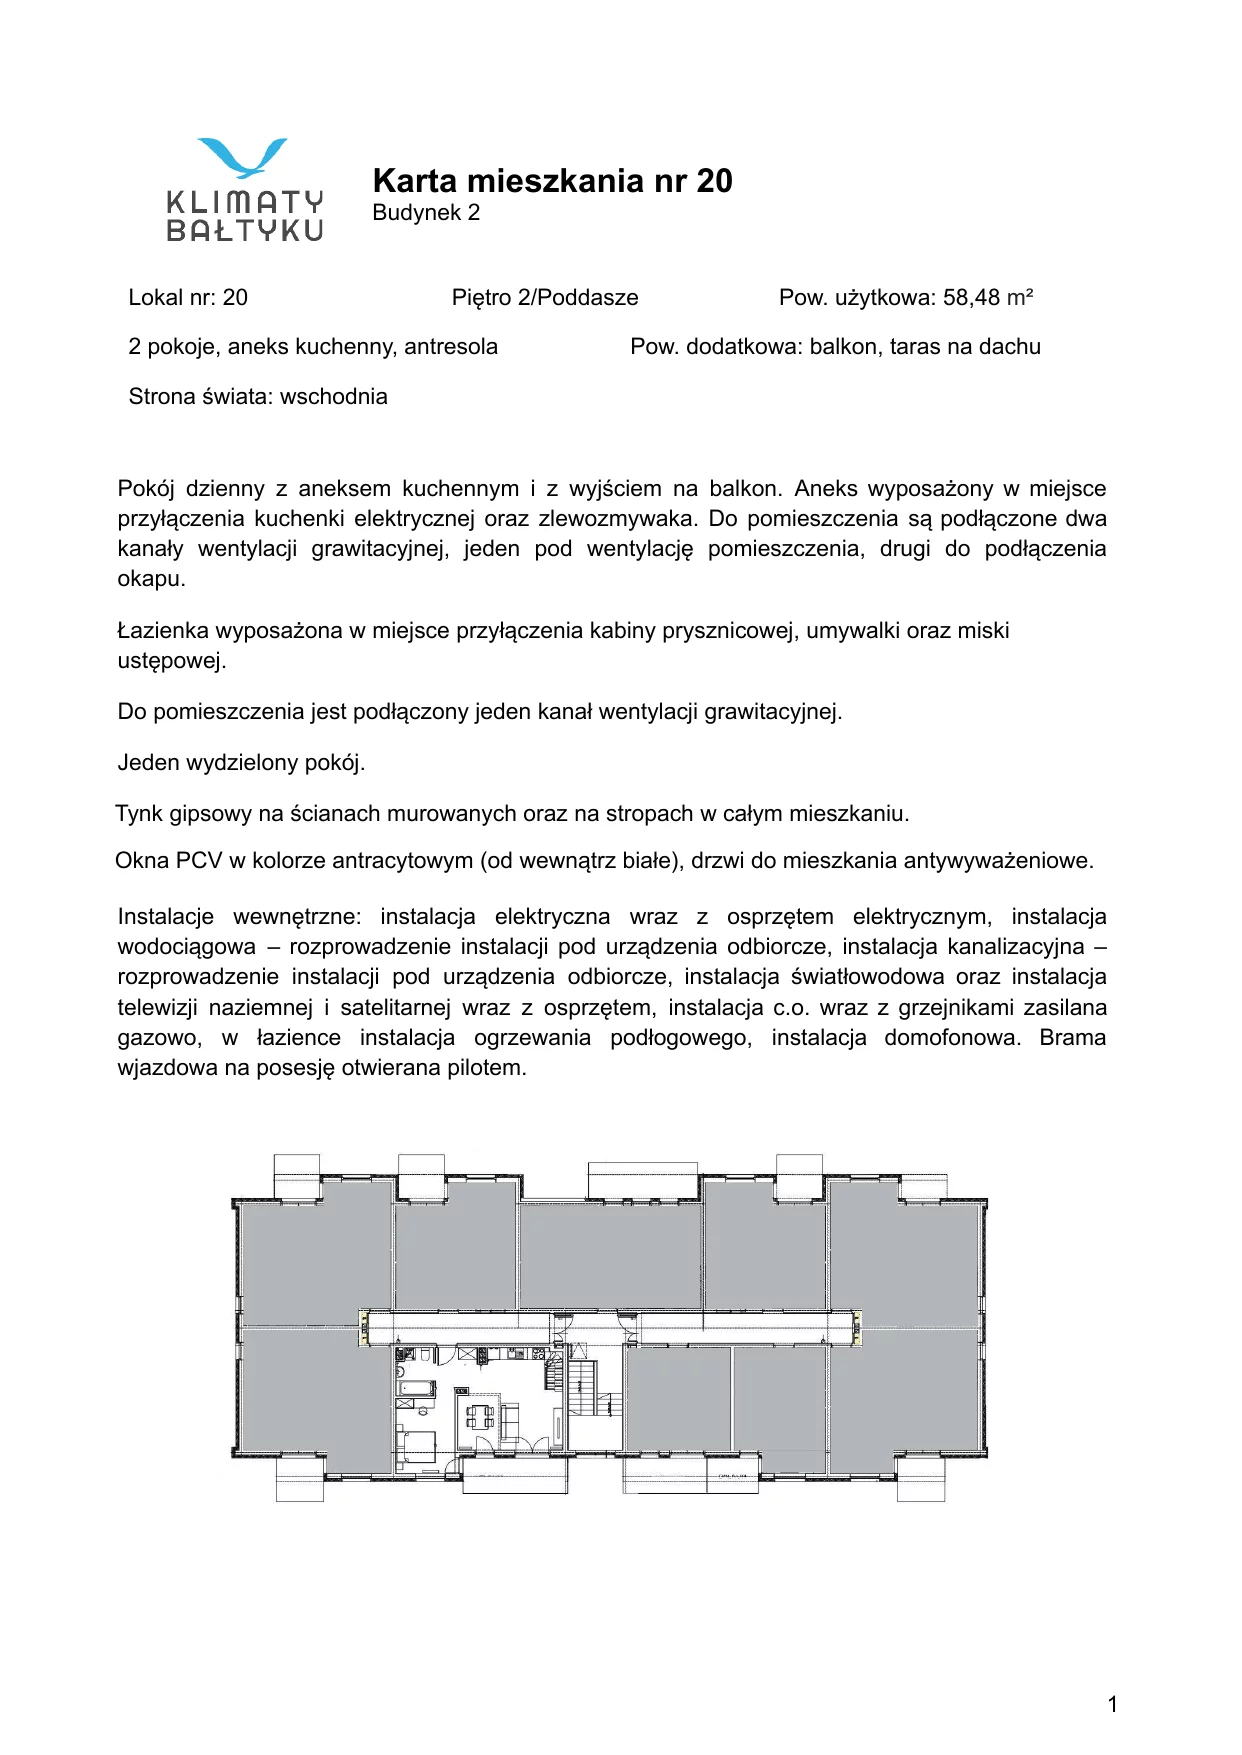 Apartament 58,48 m², piętro 2, oferta nr 20, Klimaty Bałtyku, Dziwnów, ul. Daglezji 93-94